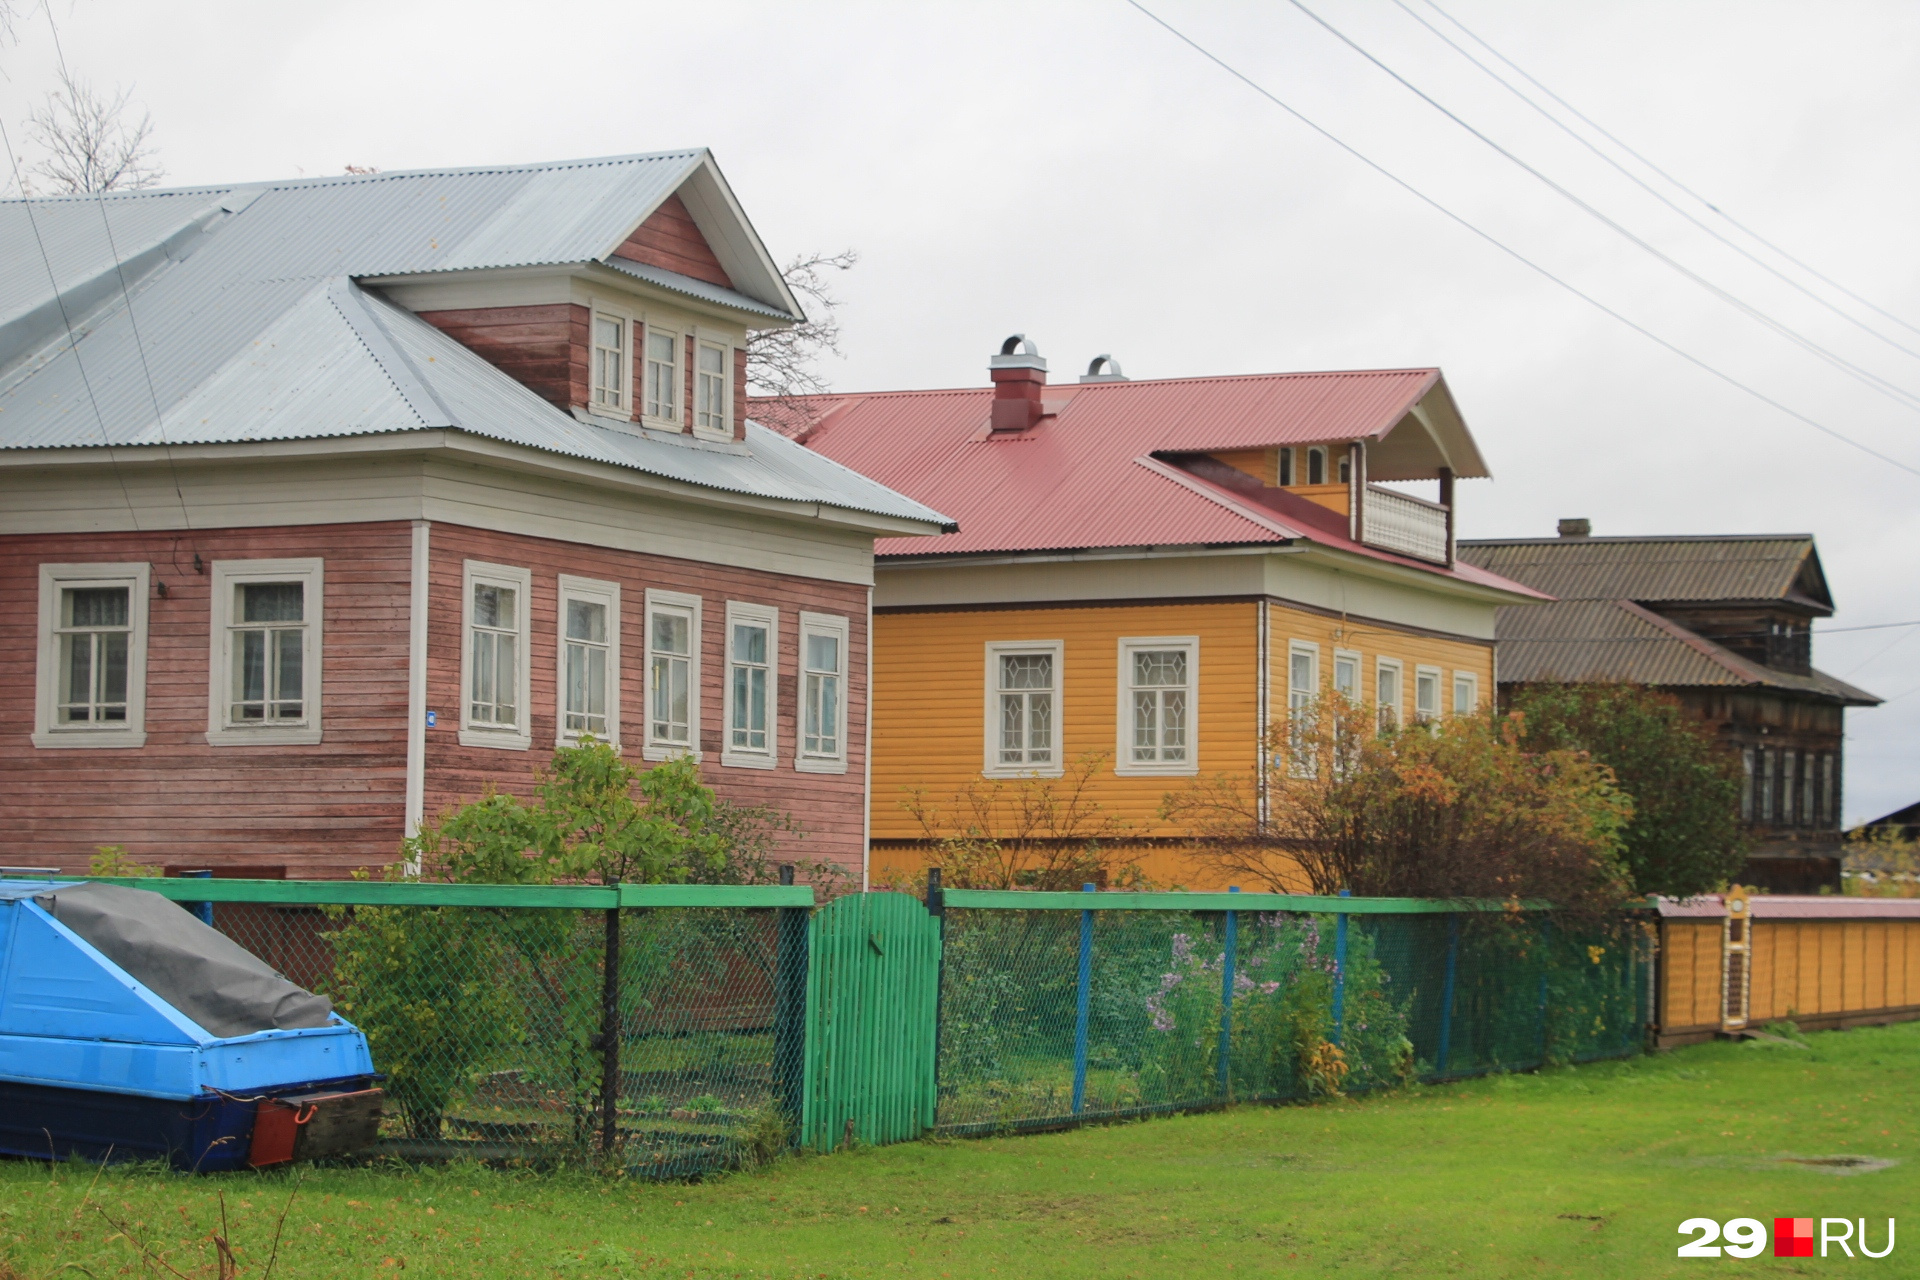 Многие старинные дома на островах используются сегодня как дачи